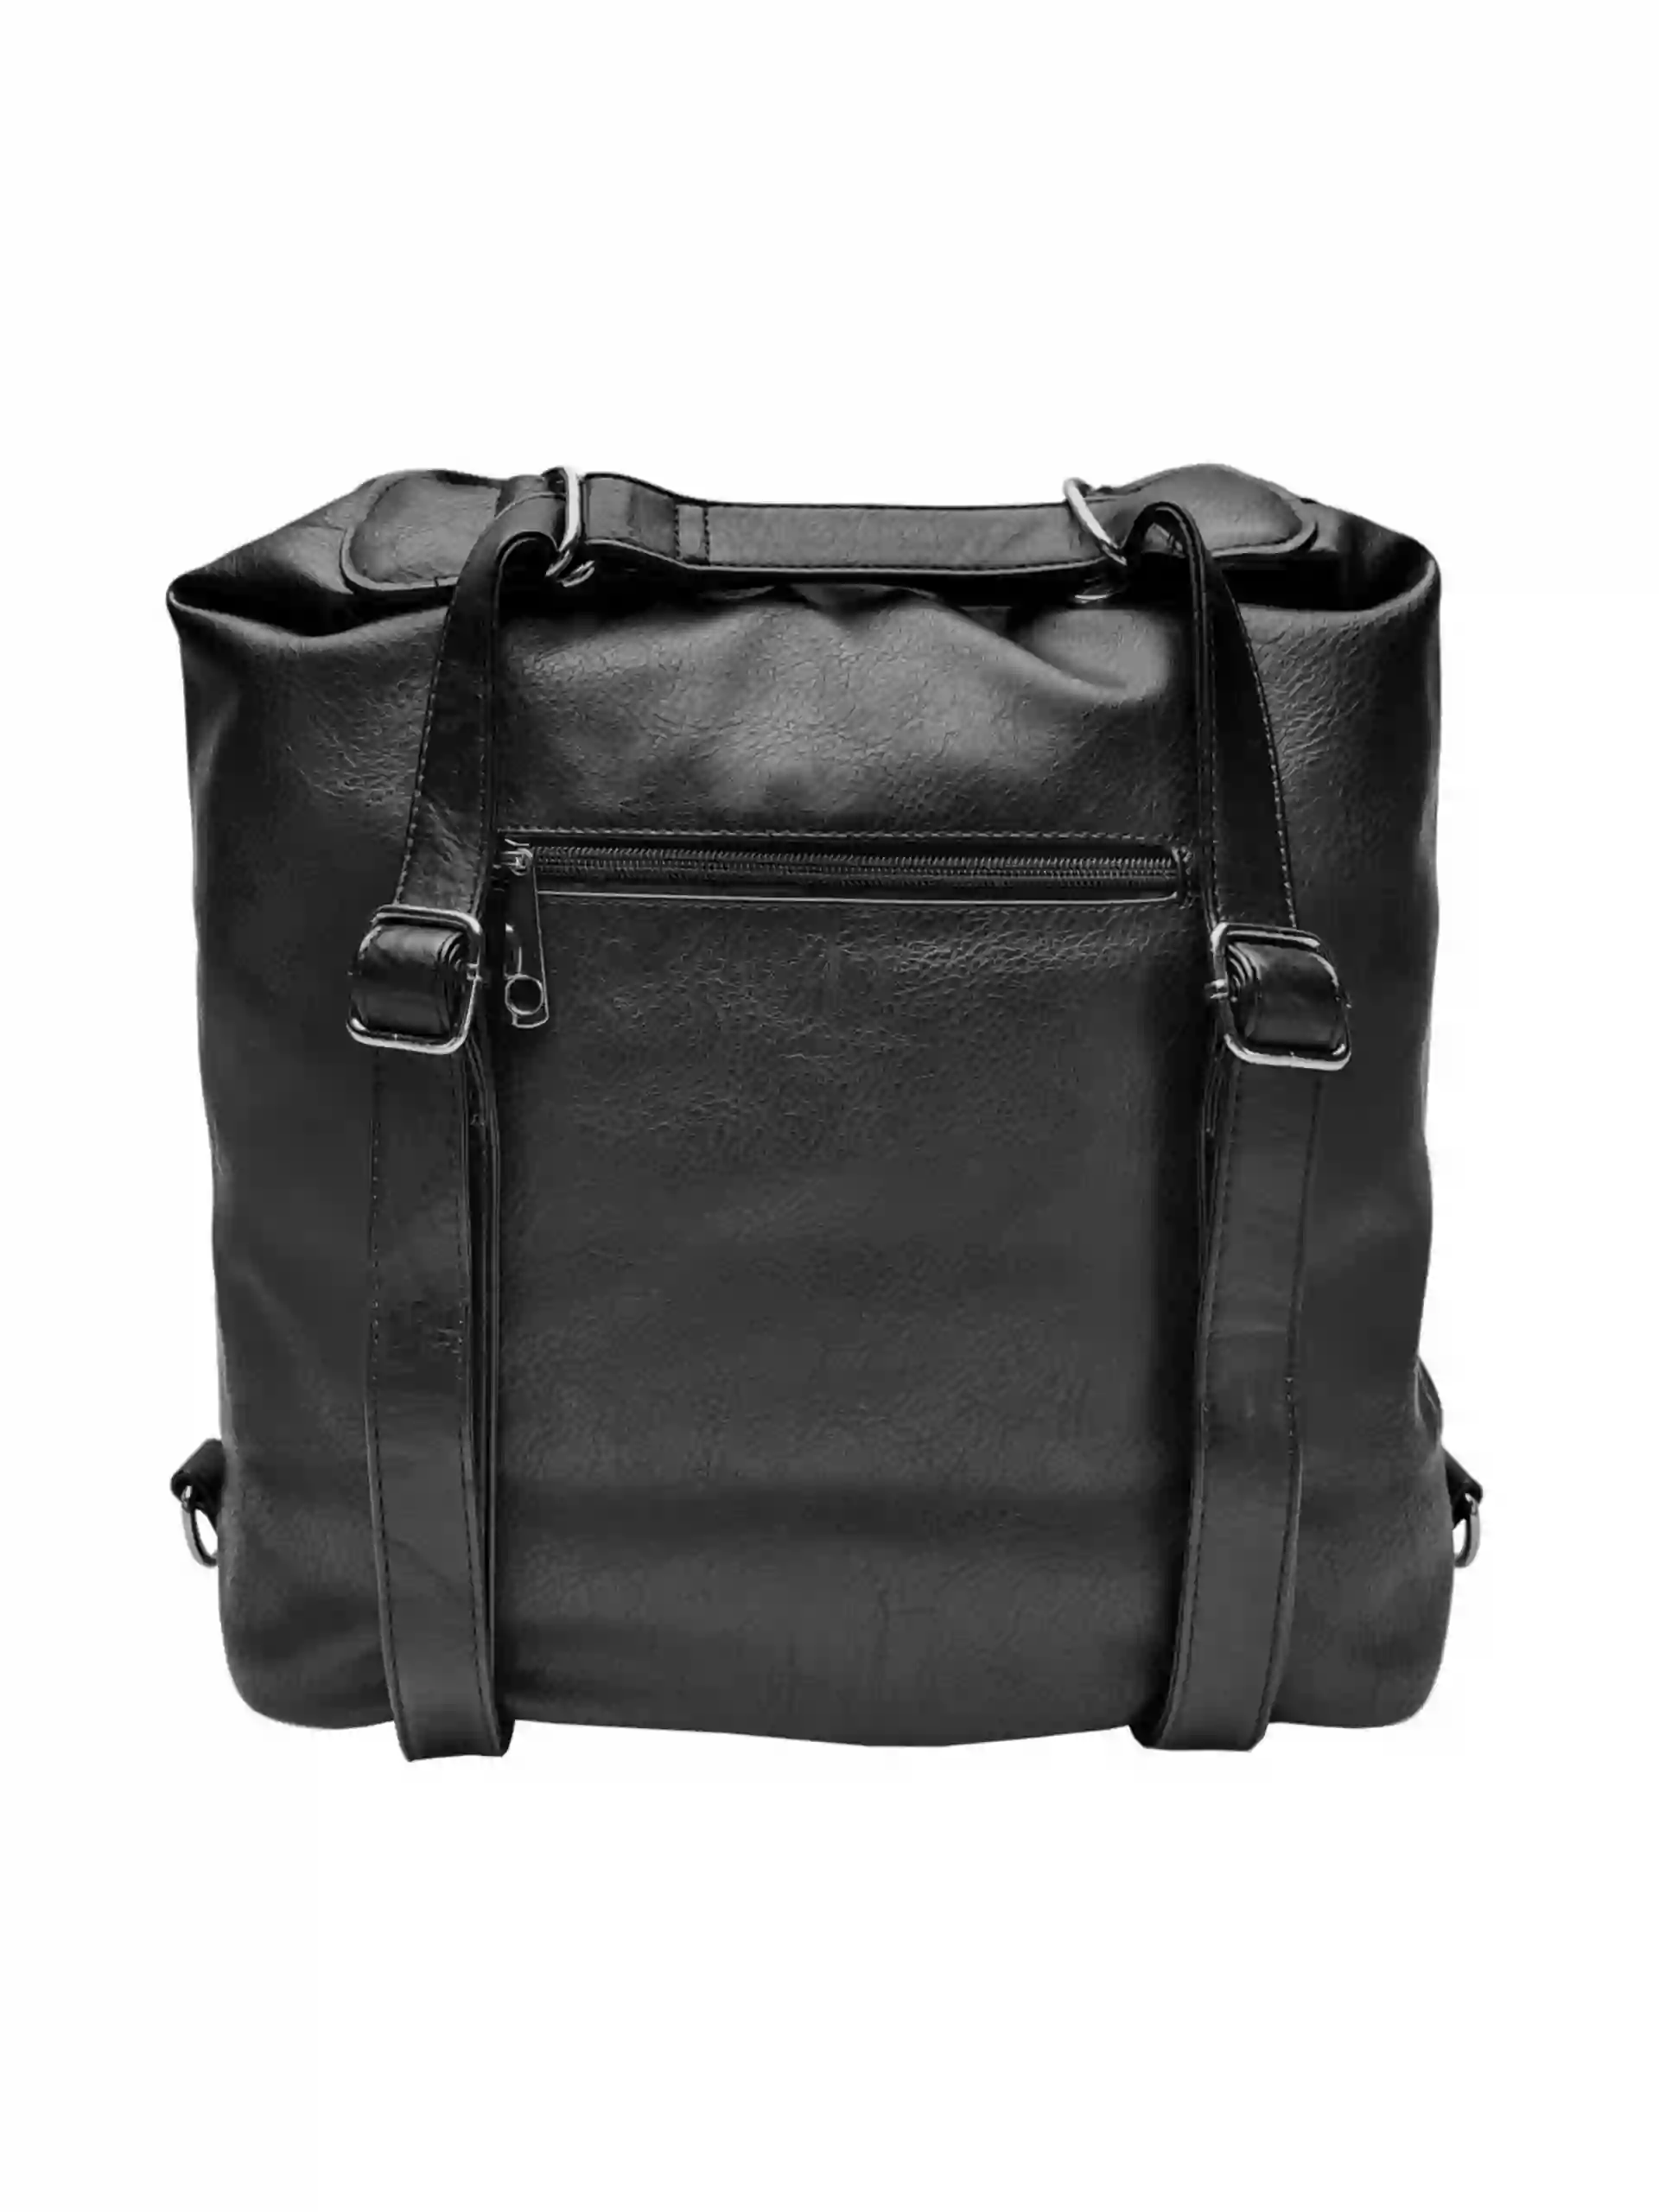 Velký černý kabelko-batoh z eko kůže, Tapple, H18077, zadní strana kabelko-batohu 2v1 s popruhy